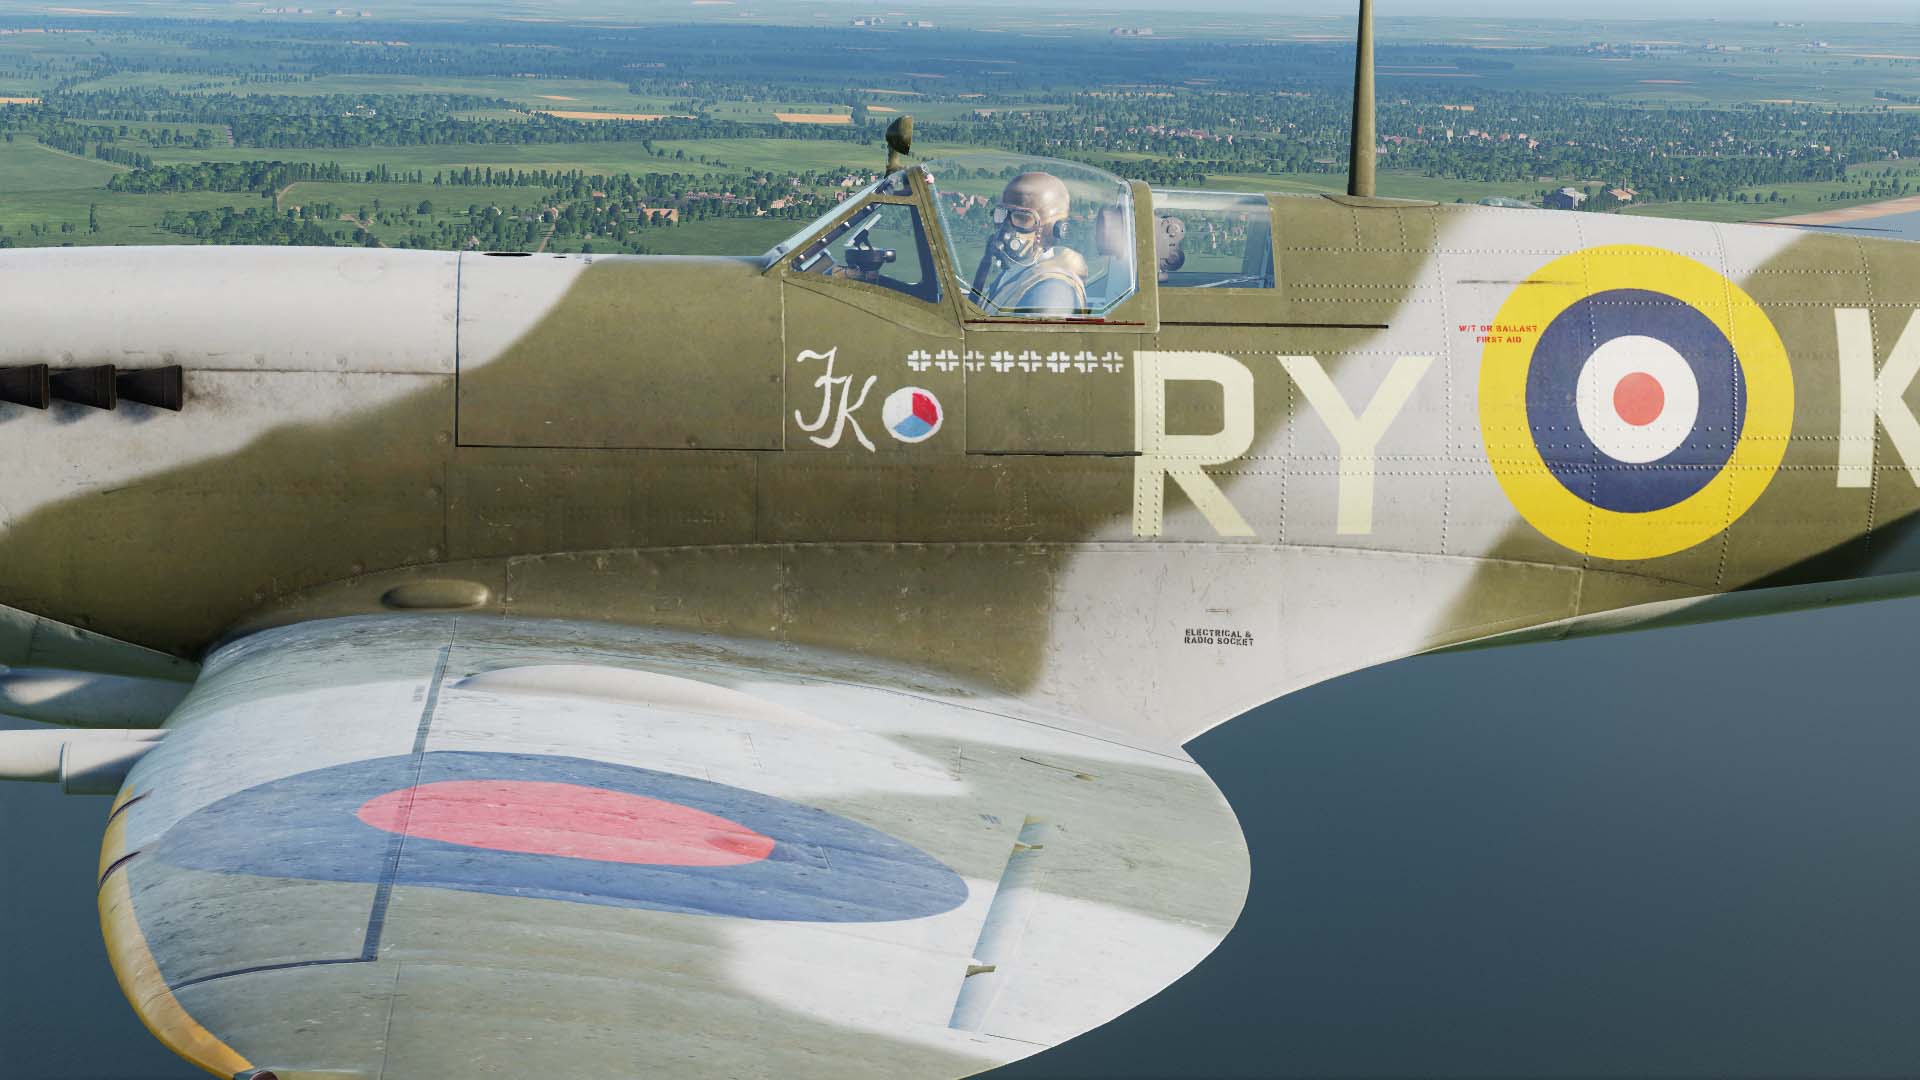 RAF, 313.Sqdn_RY-K AR432 1942 "JK"